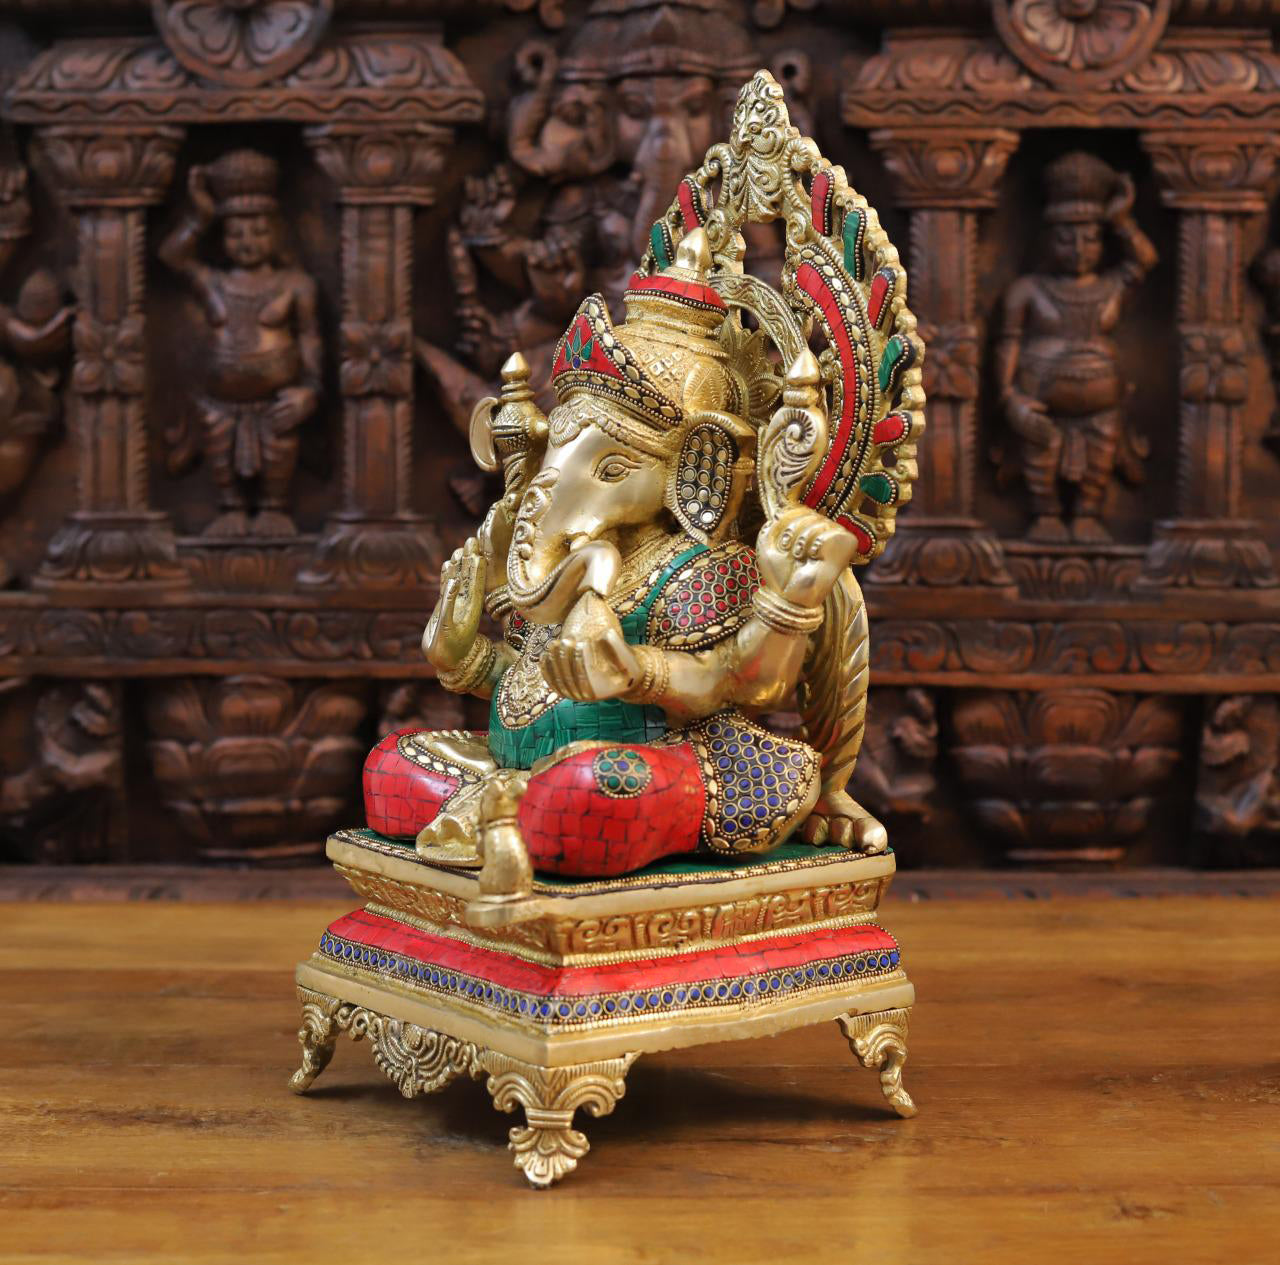 StatueStudio Brass Small Ganesha Idols For Home Decor Office Temple De